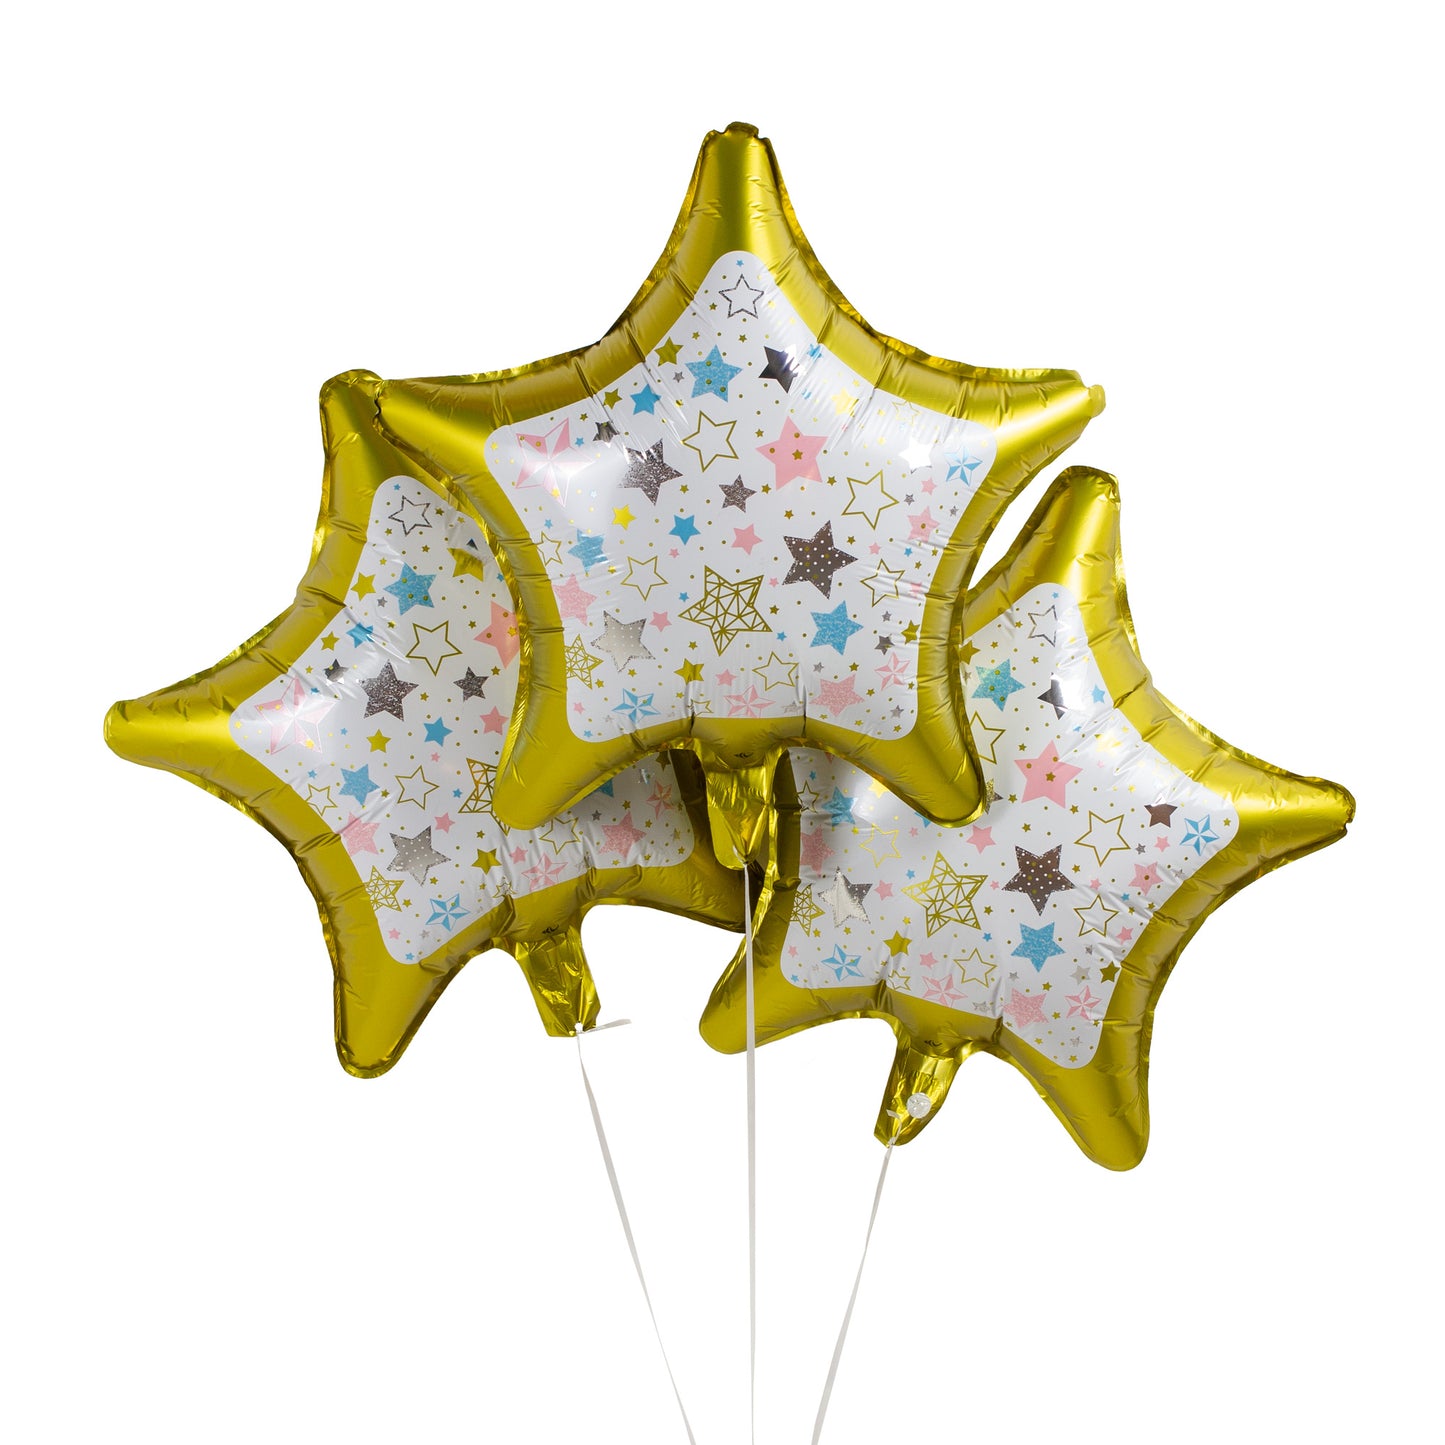 Gold & White Star Foil Balloons - Pack of 3